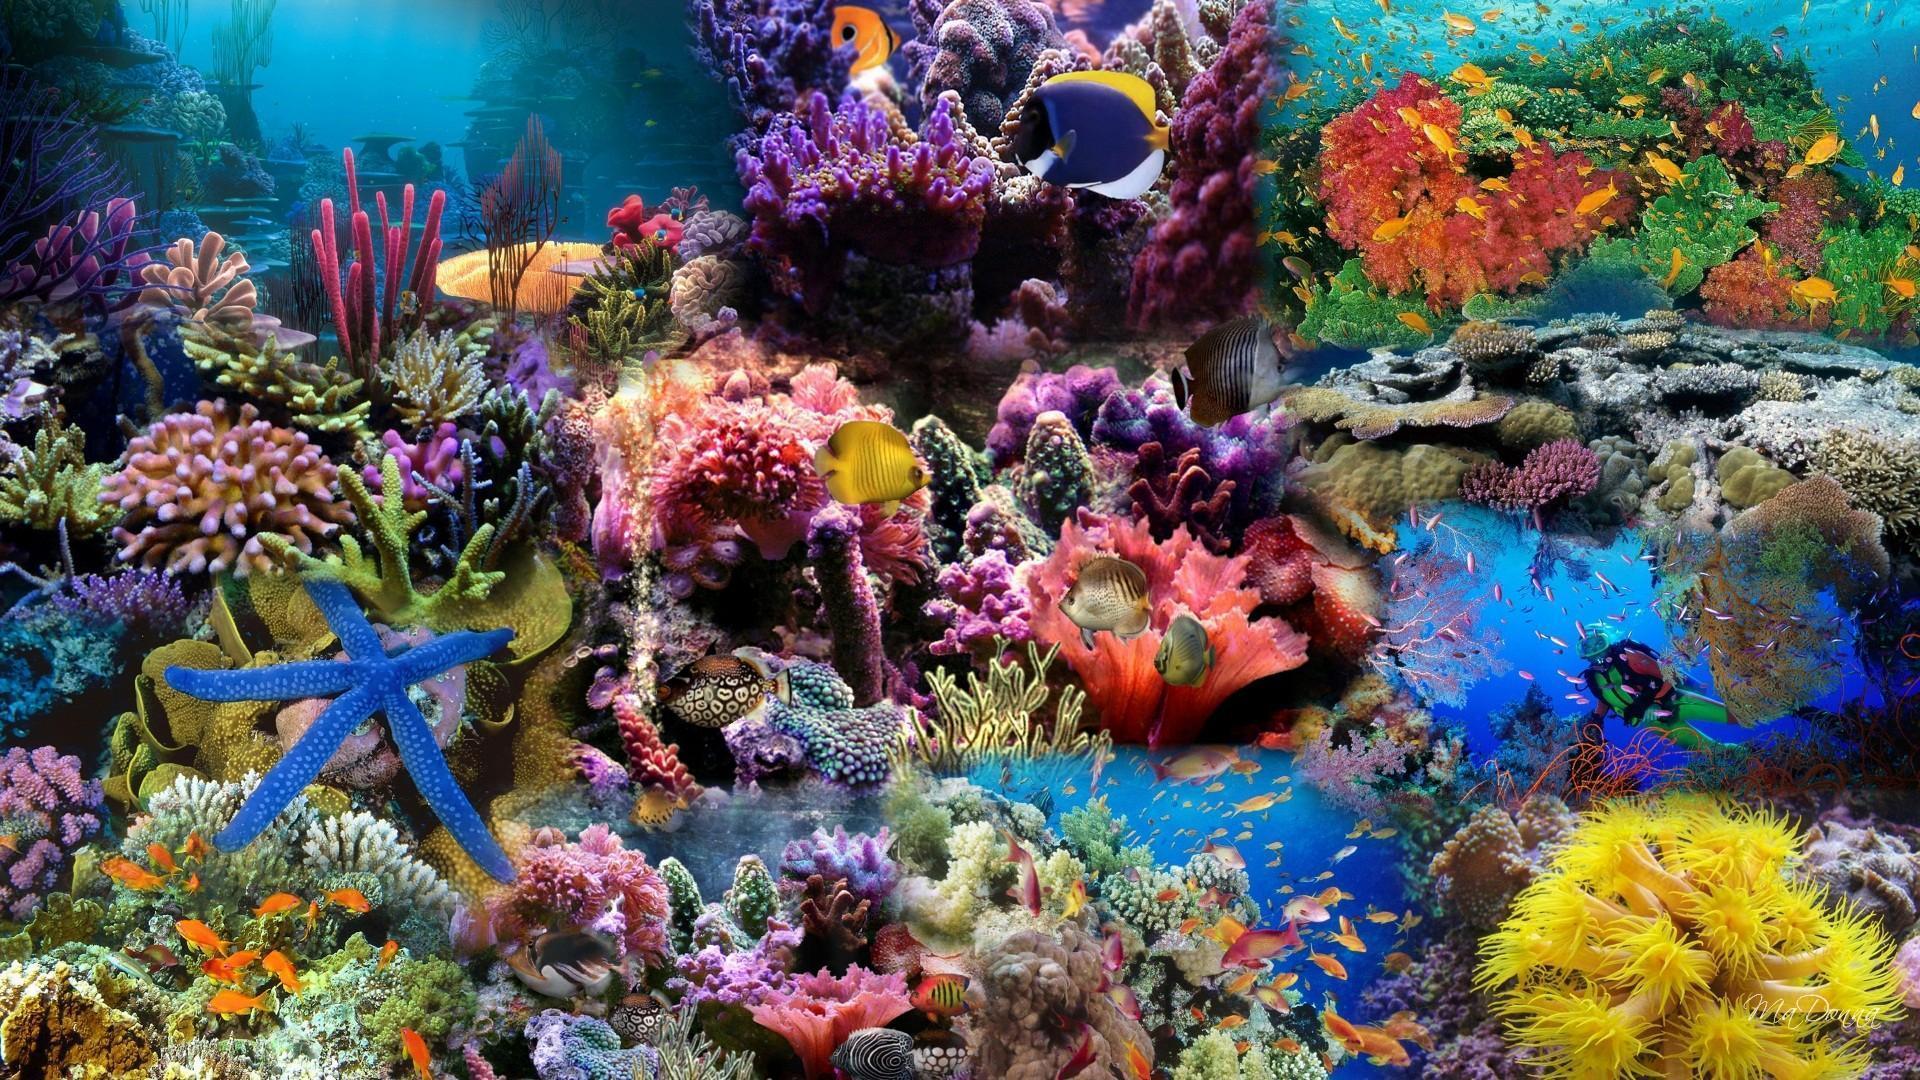 Coral Reef Wallpaper. Great Barrier Reef Wallpaper, Coral Reef Wallpaper and Tropical Reef Wallpaper